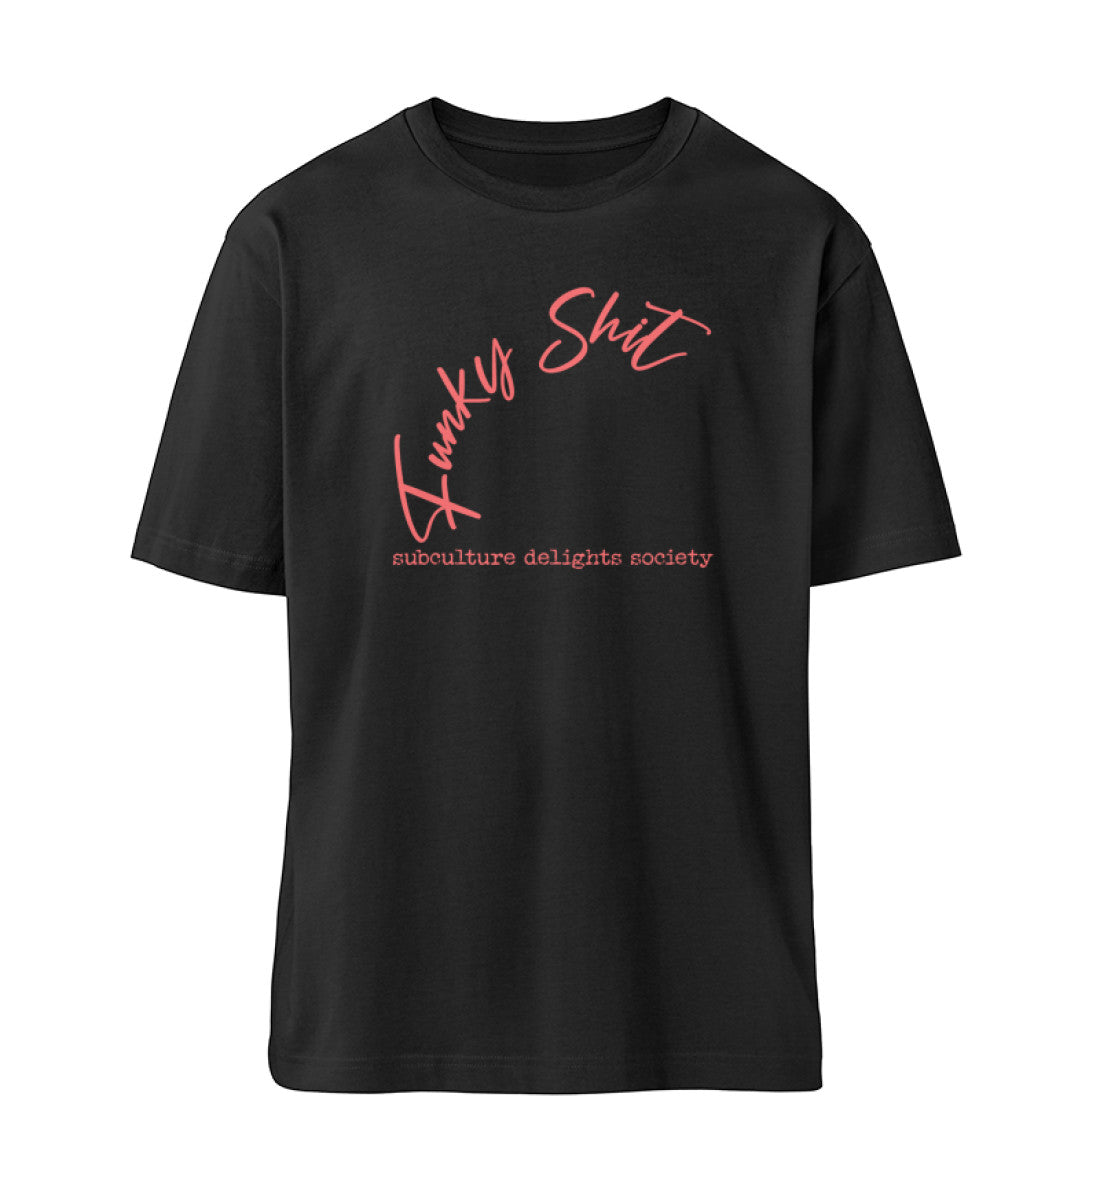 Schwarzes T-Shirt Unisex Relaxed Fit für Frauen und Männer bedruckt mit dem Design der Roger Rockawoo Clothing Kollektion Guitar Funky Shit